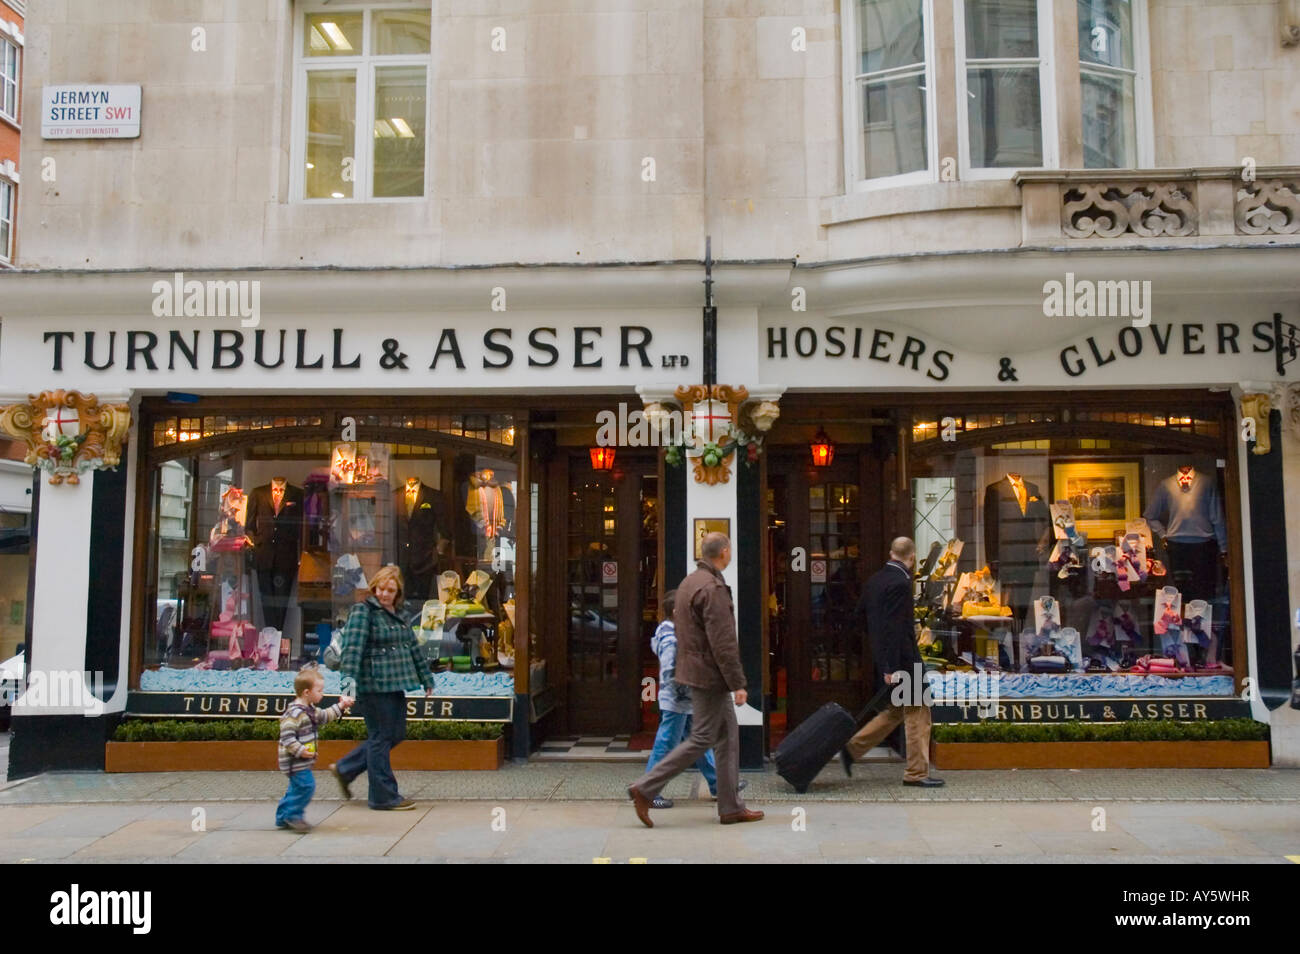 Turnbull Asser shop along Jermyn Street in London UK Stock Photo